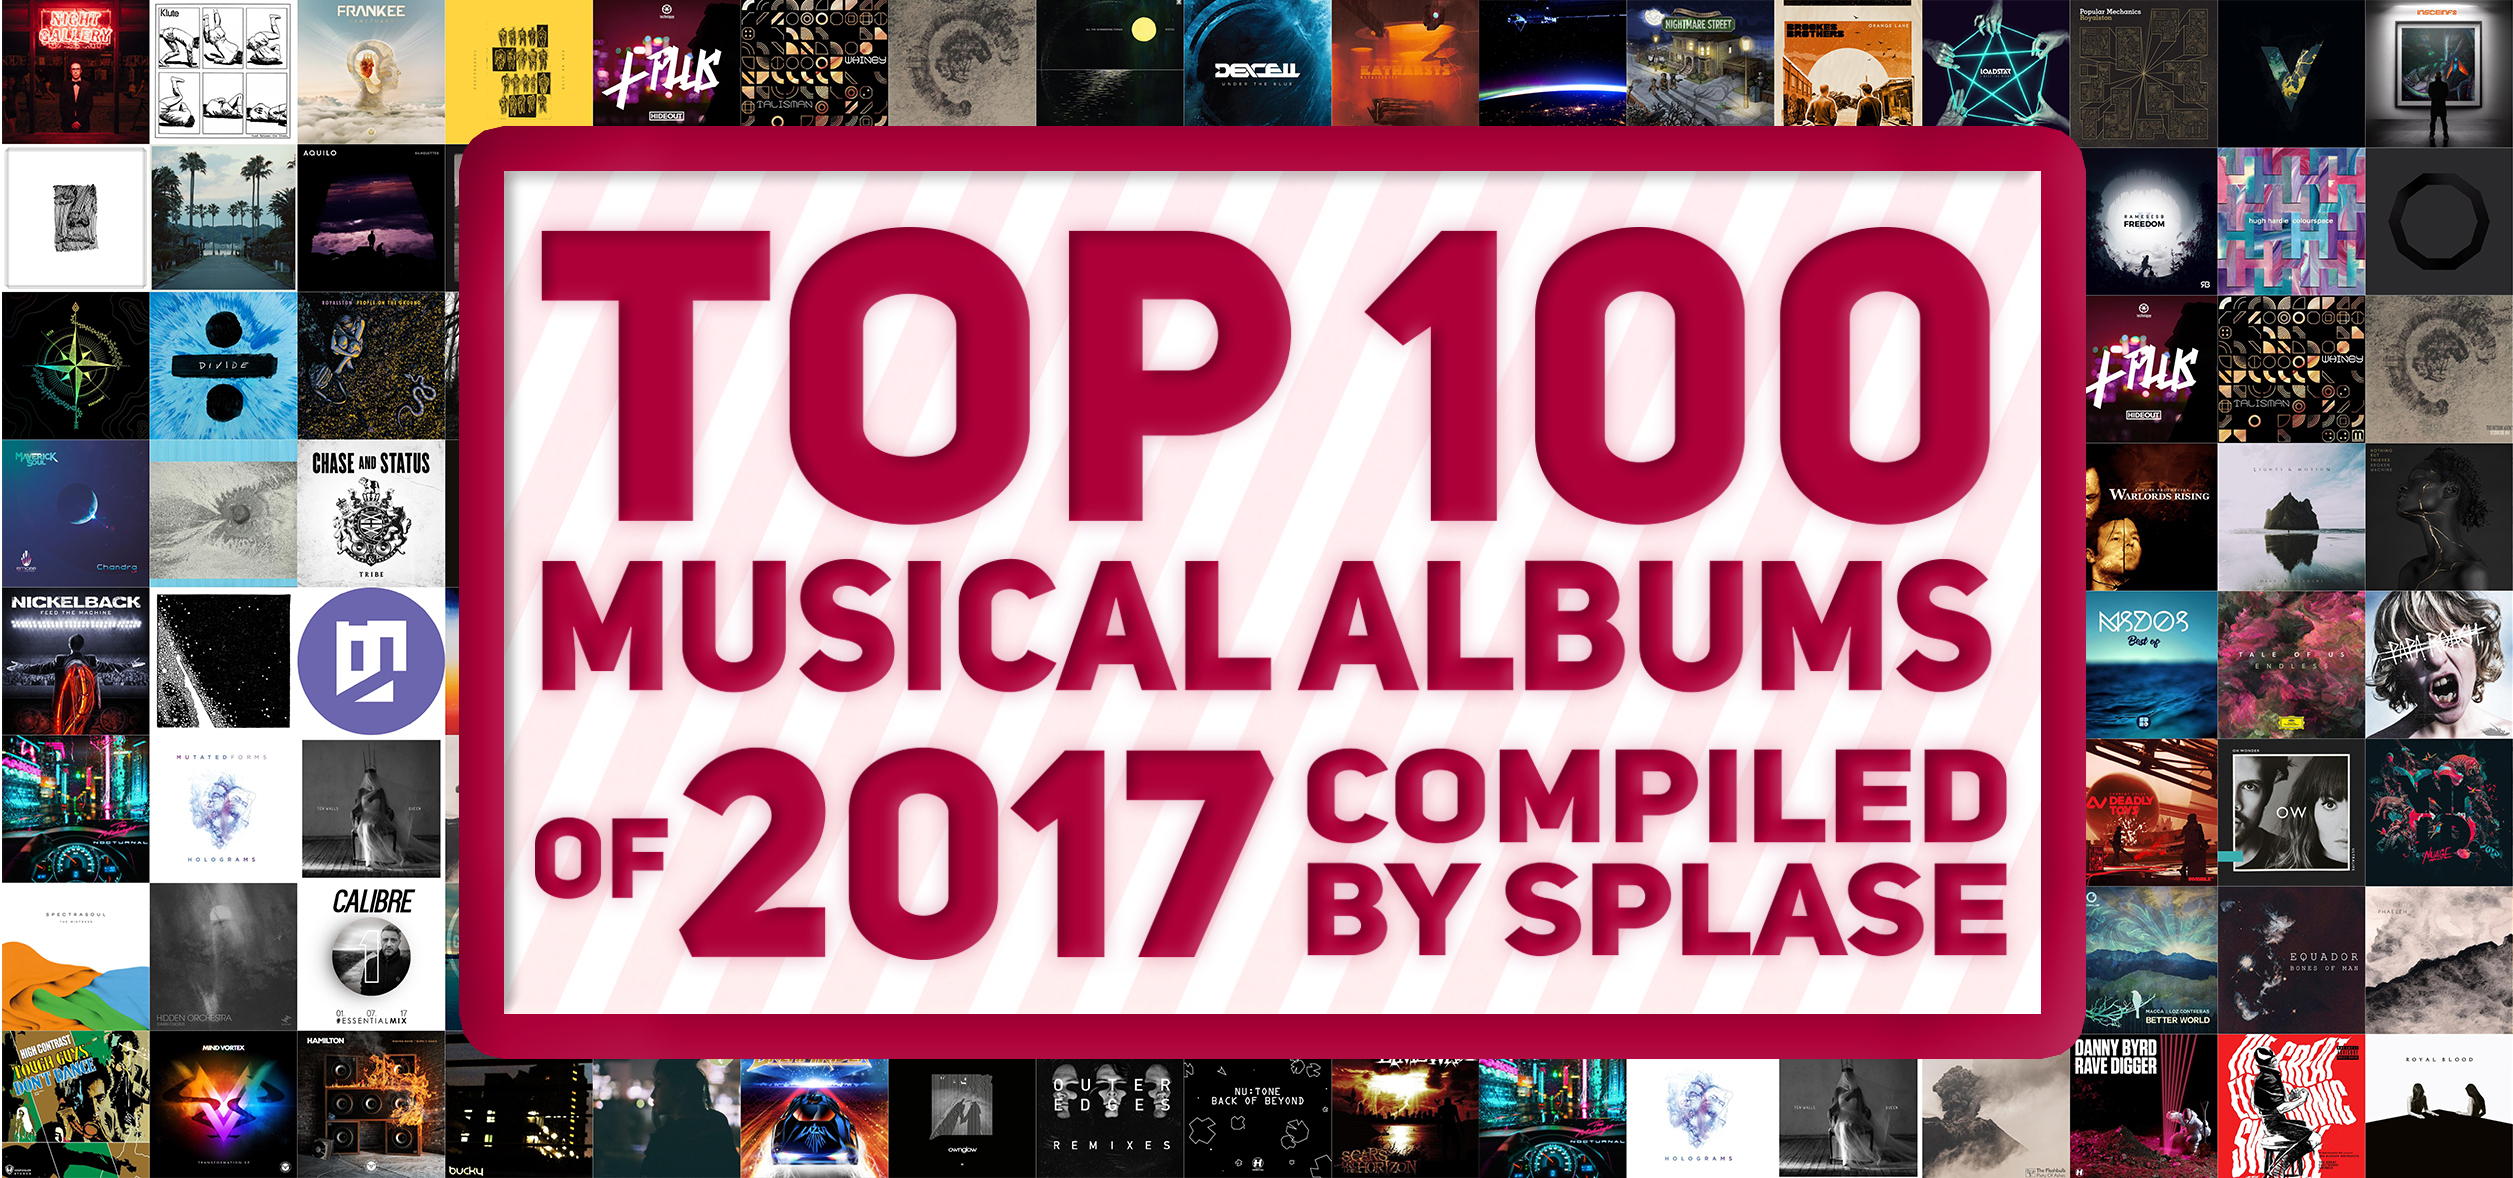 ТОП 100 Музыкальных Альбомов 2017 года по моей версии / TOP 100 Musical Albums of 2017 compiled by Splase